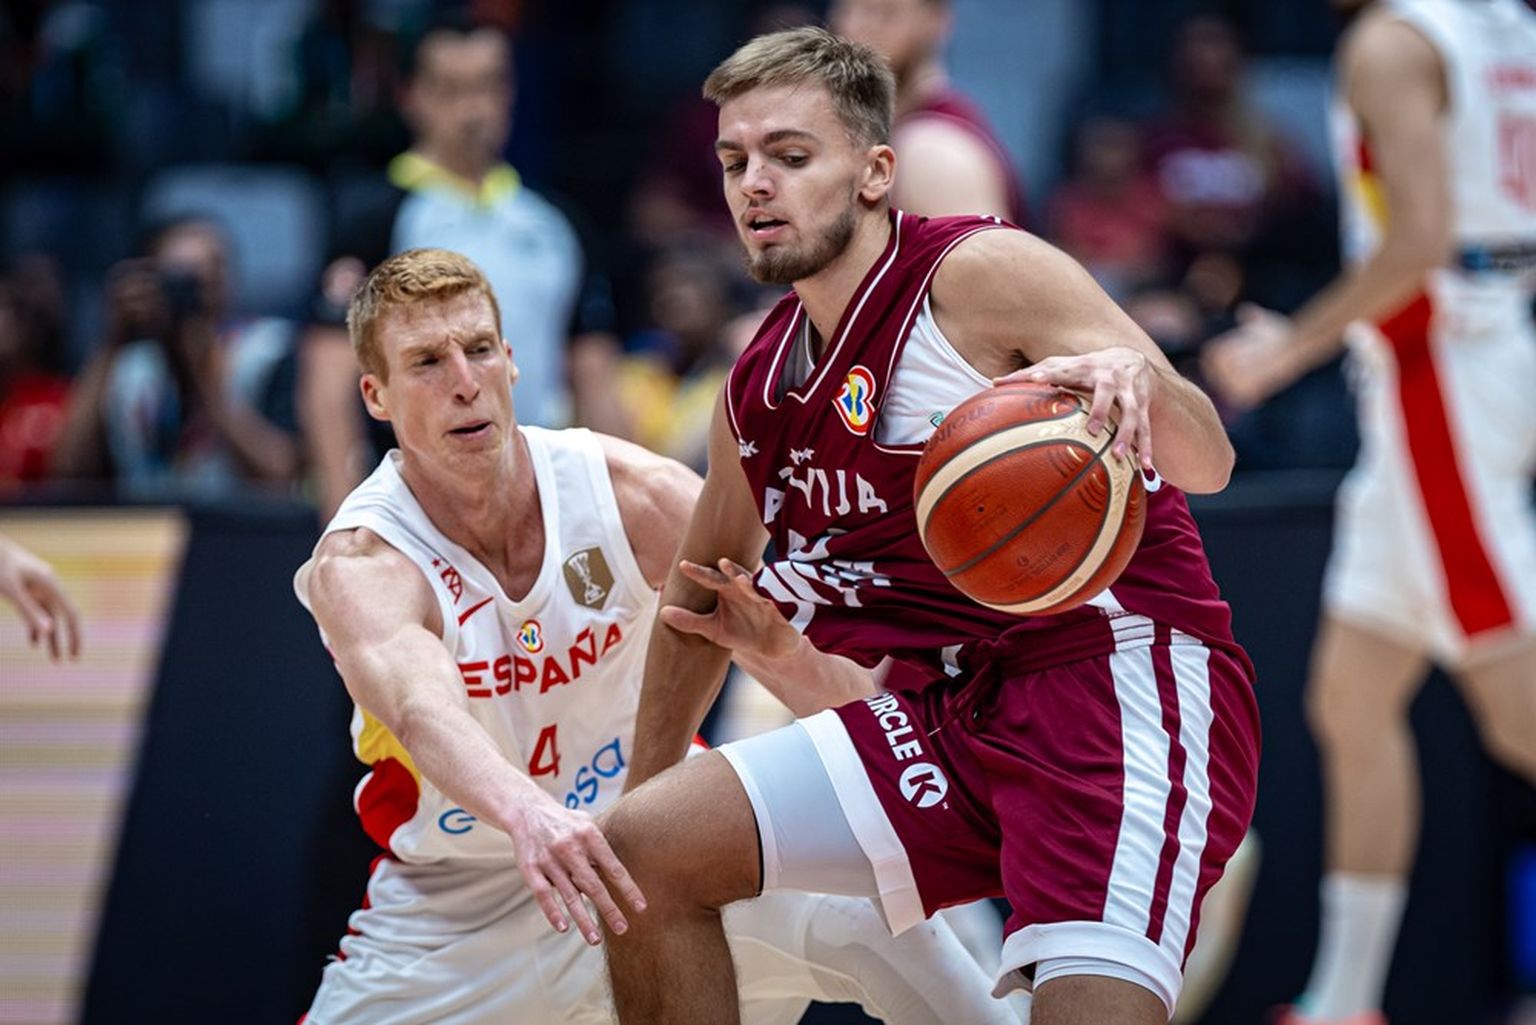 Latvijas basketbolists Artūrs Žagars